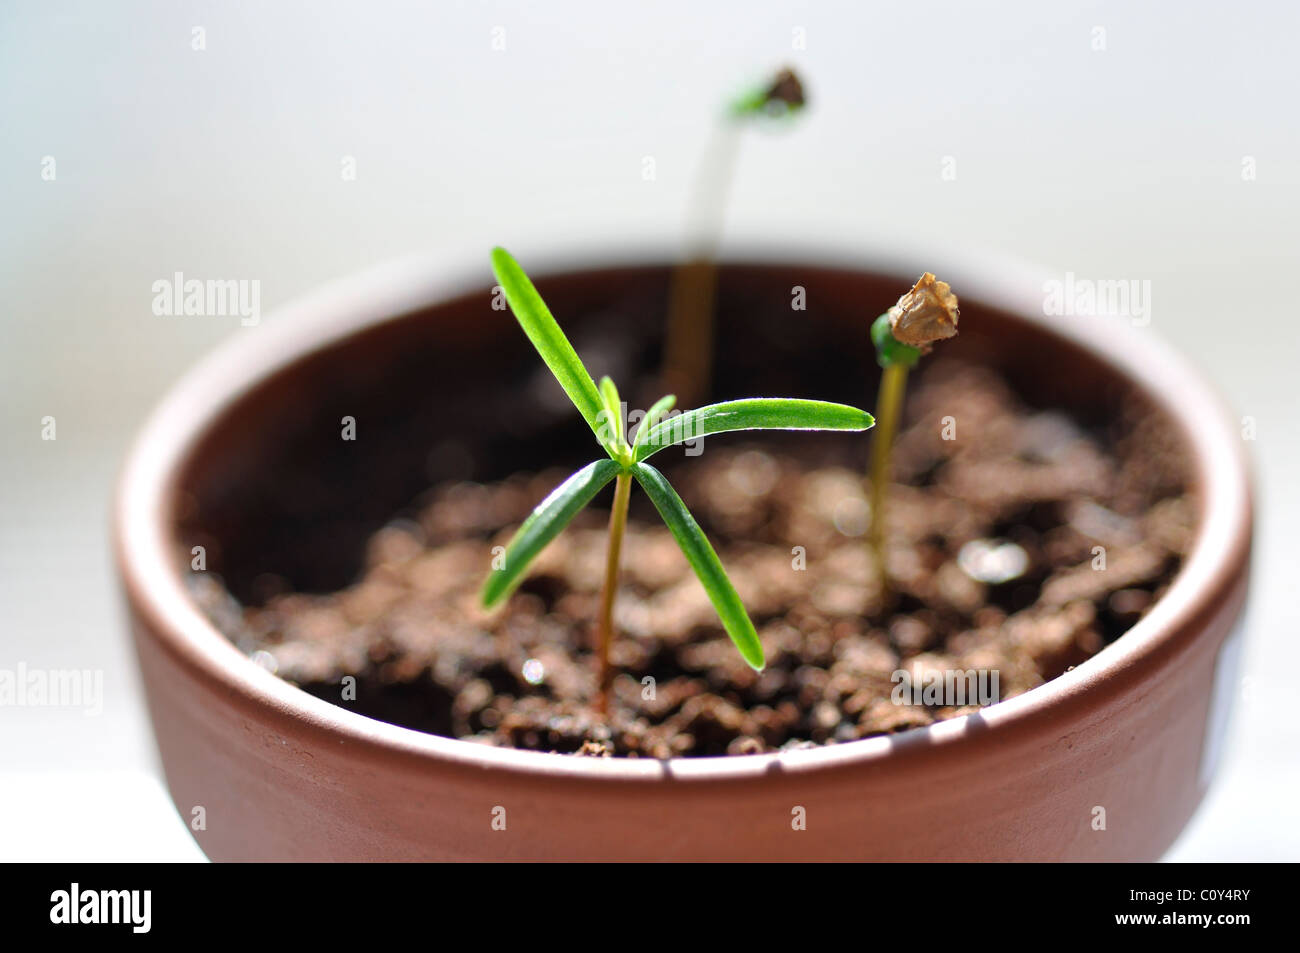 Balsam fir sprout Stock Photo